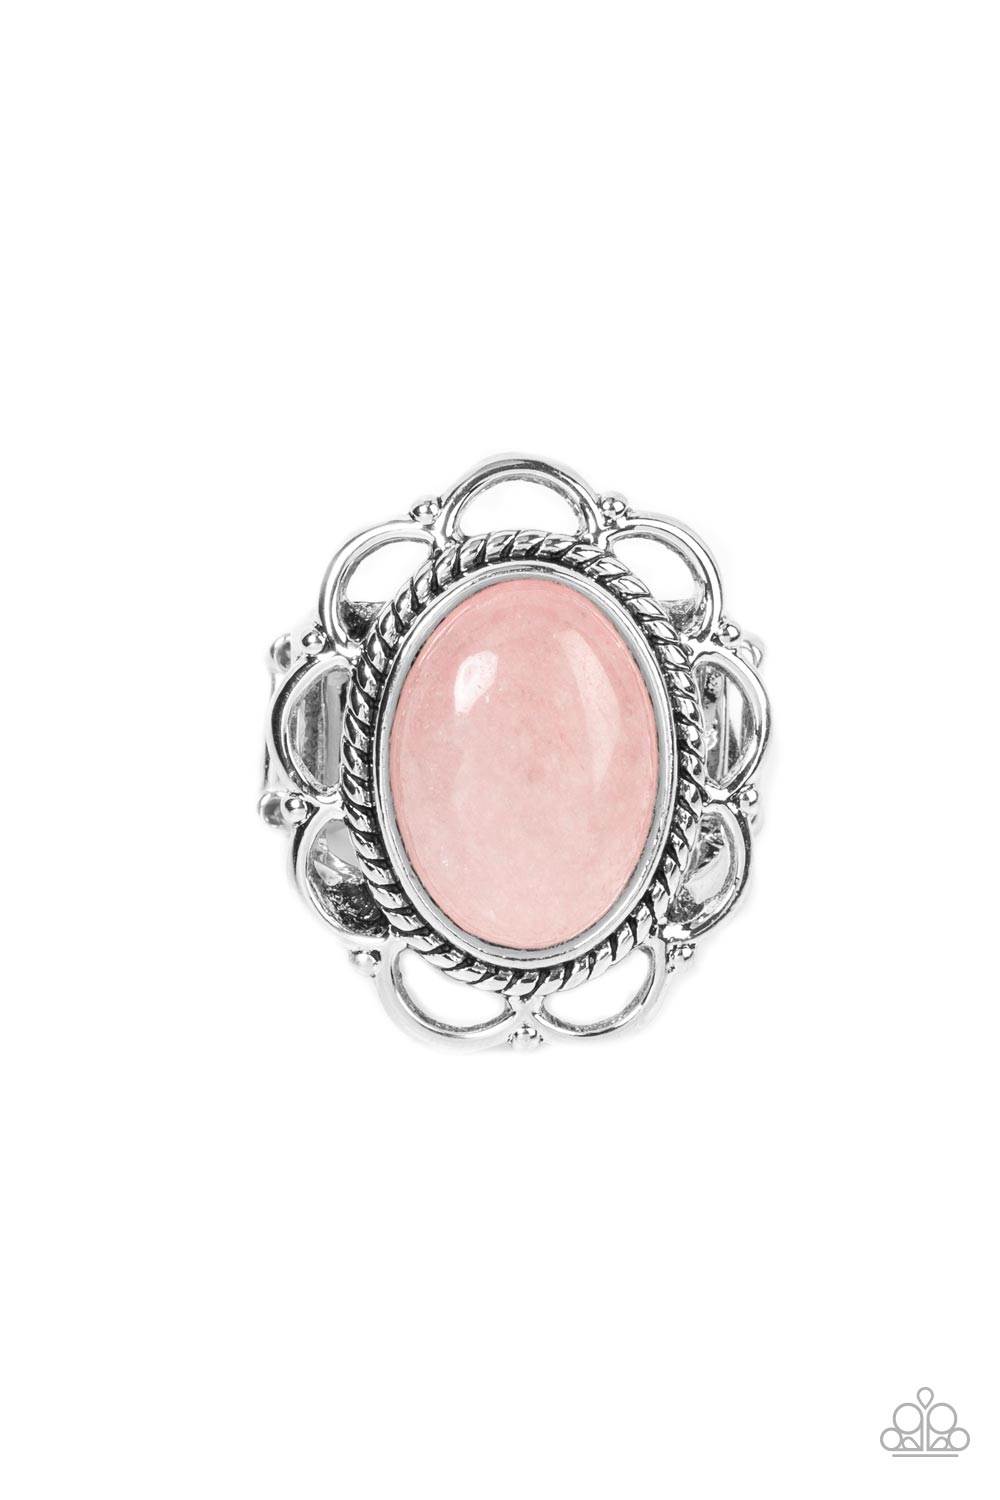 Gemstone Eden Paparazzi Accessories Ring Pink